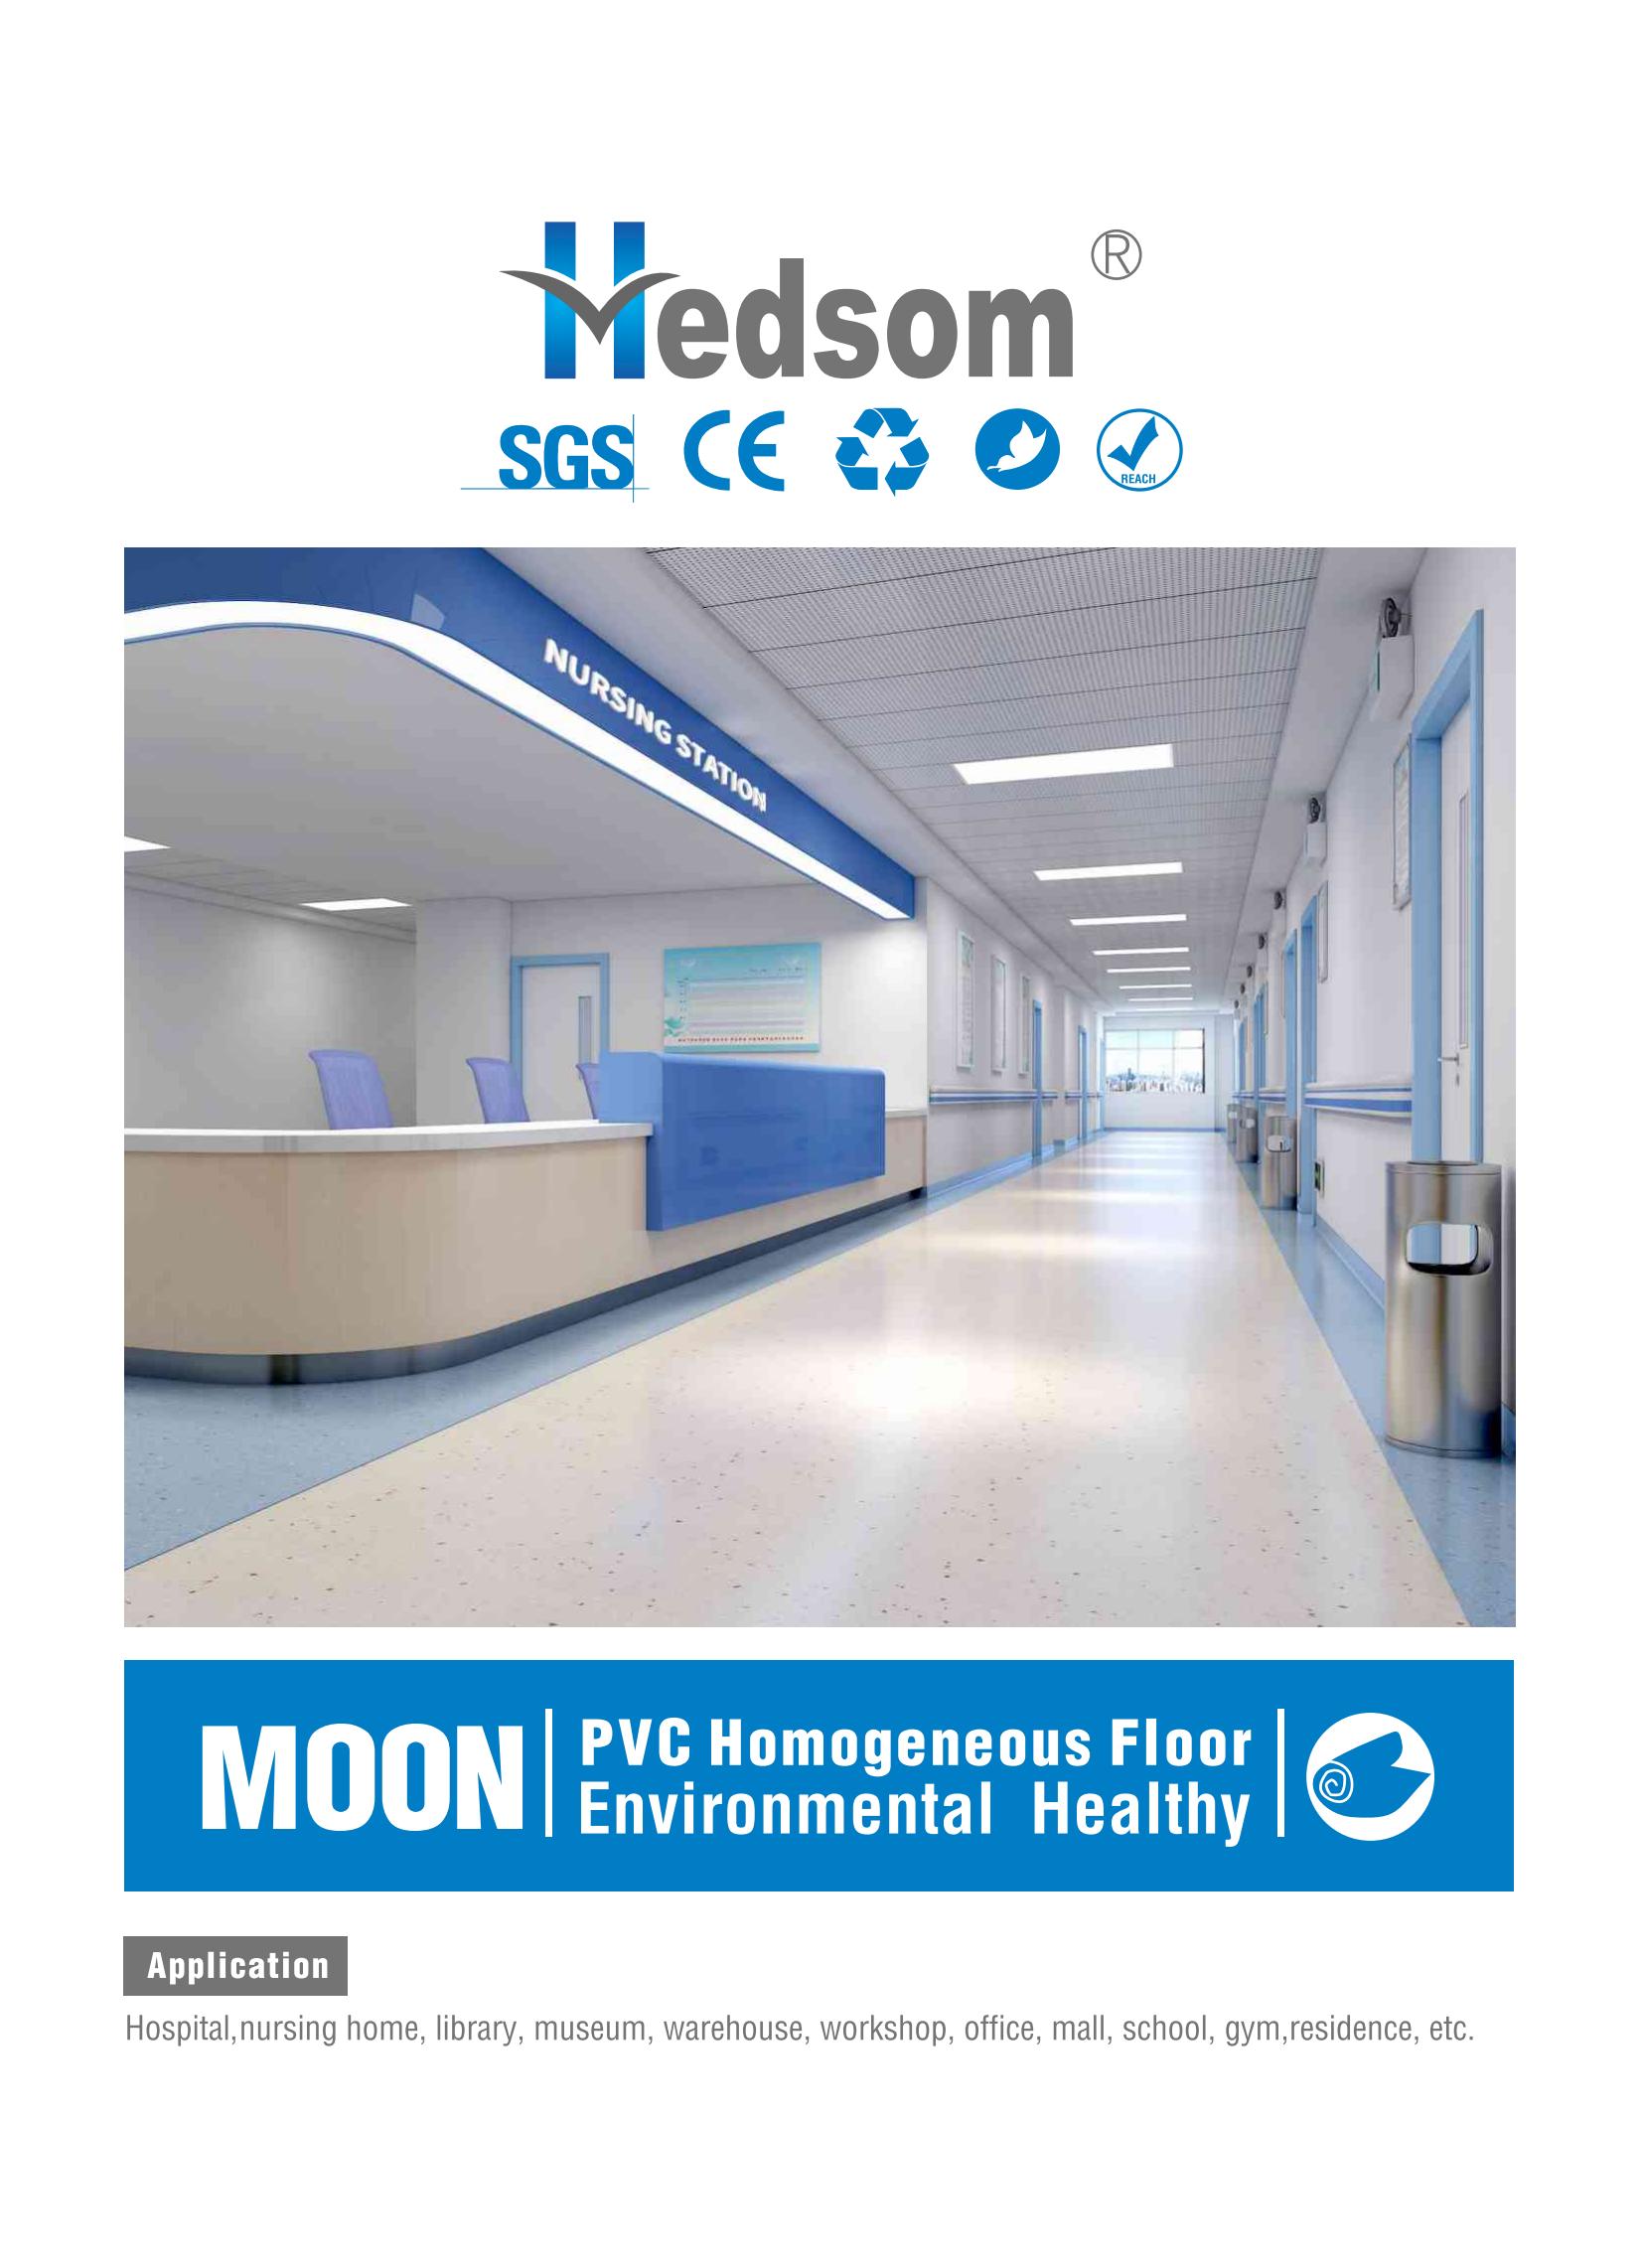 Hedsom PVC Anti bacterial homogeneous Flooring(Moon)-2021_00.jpg